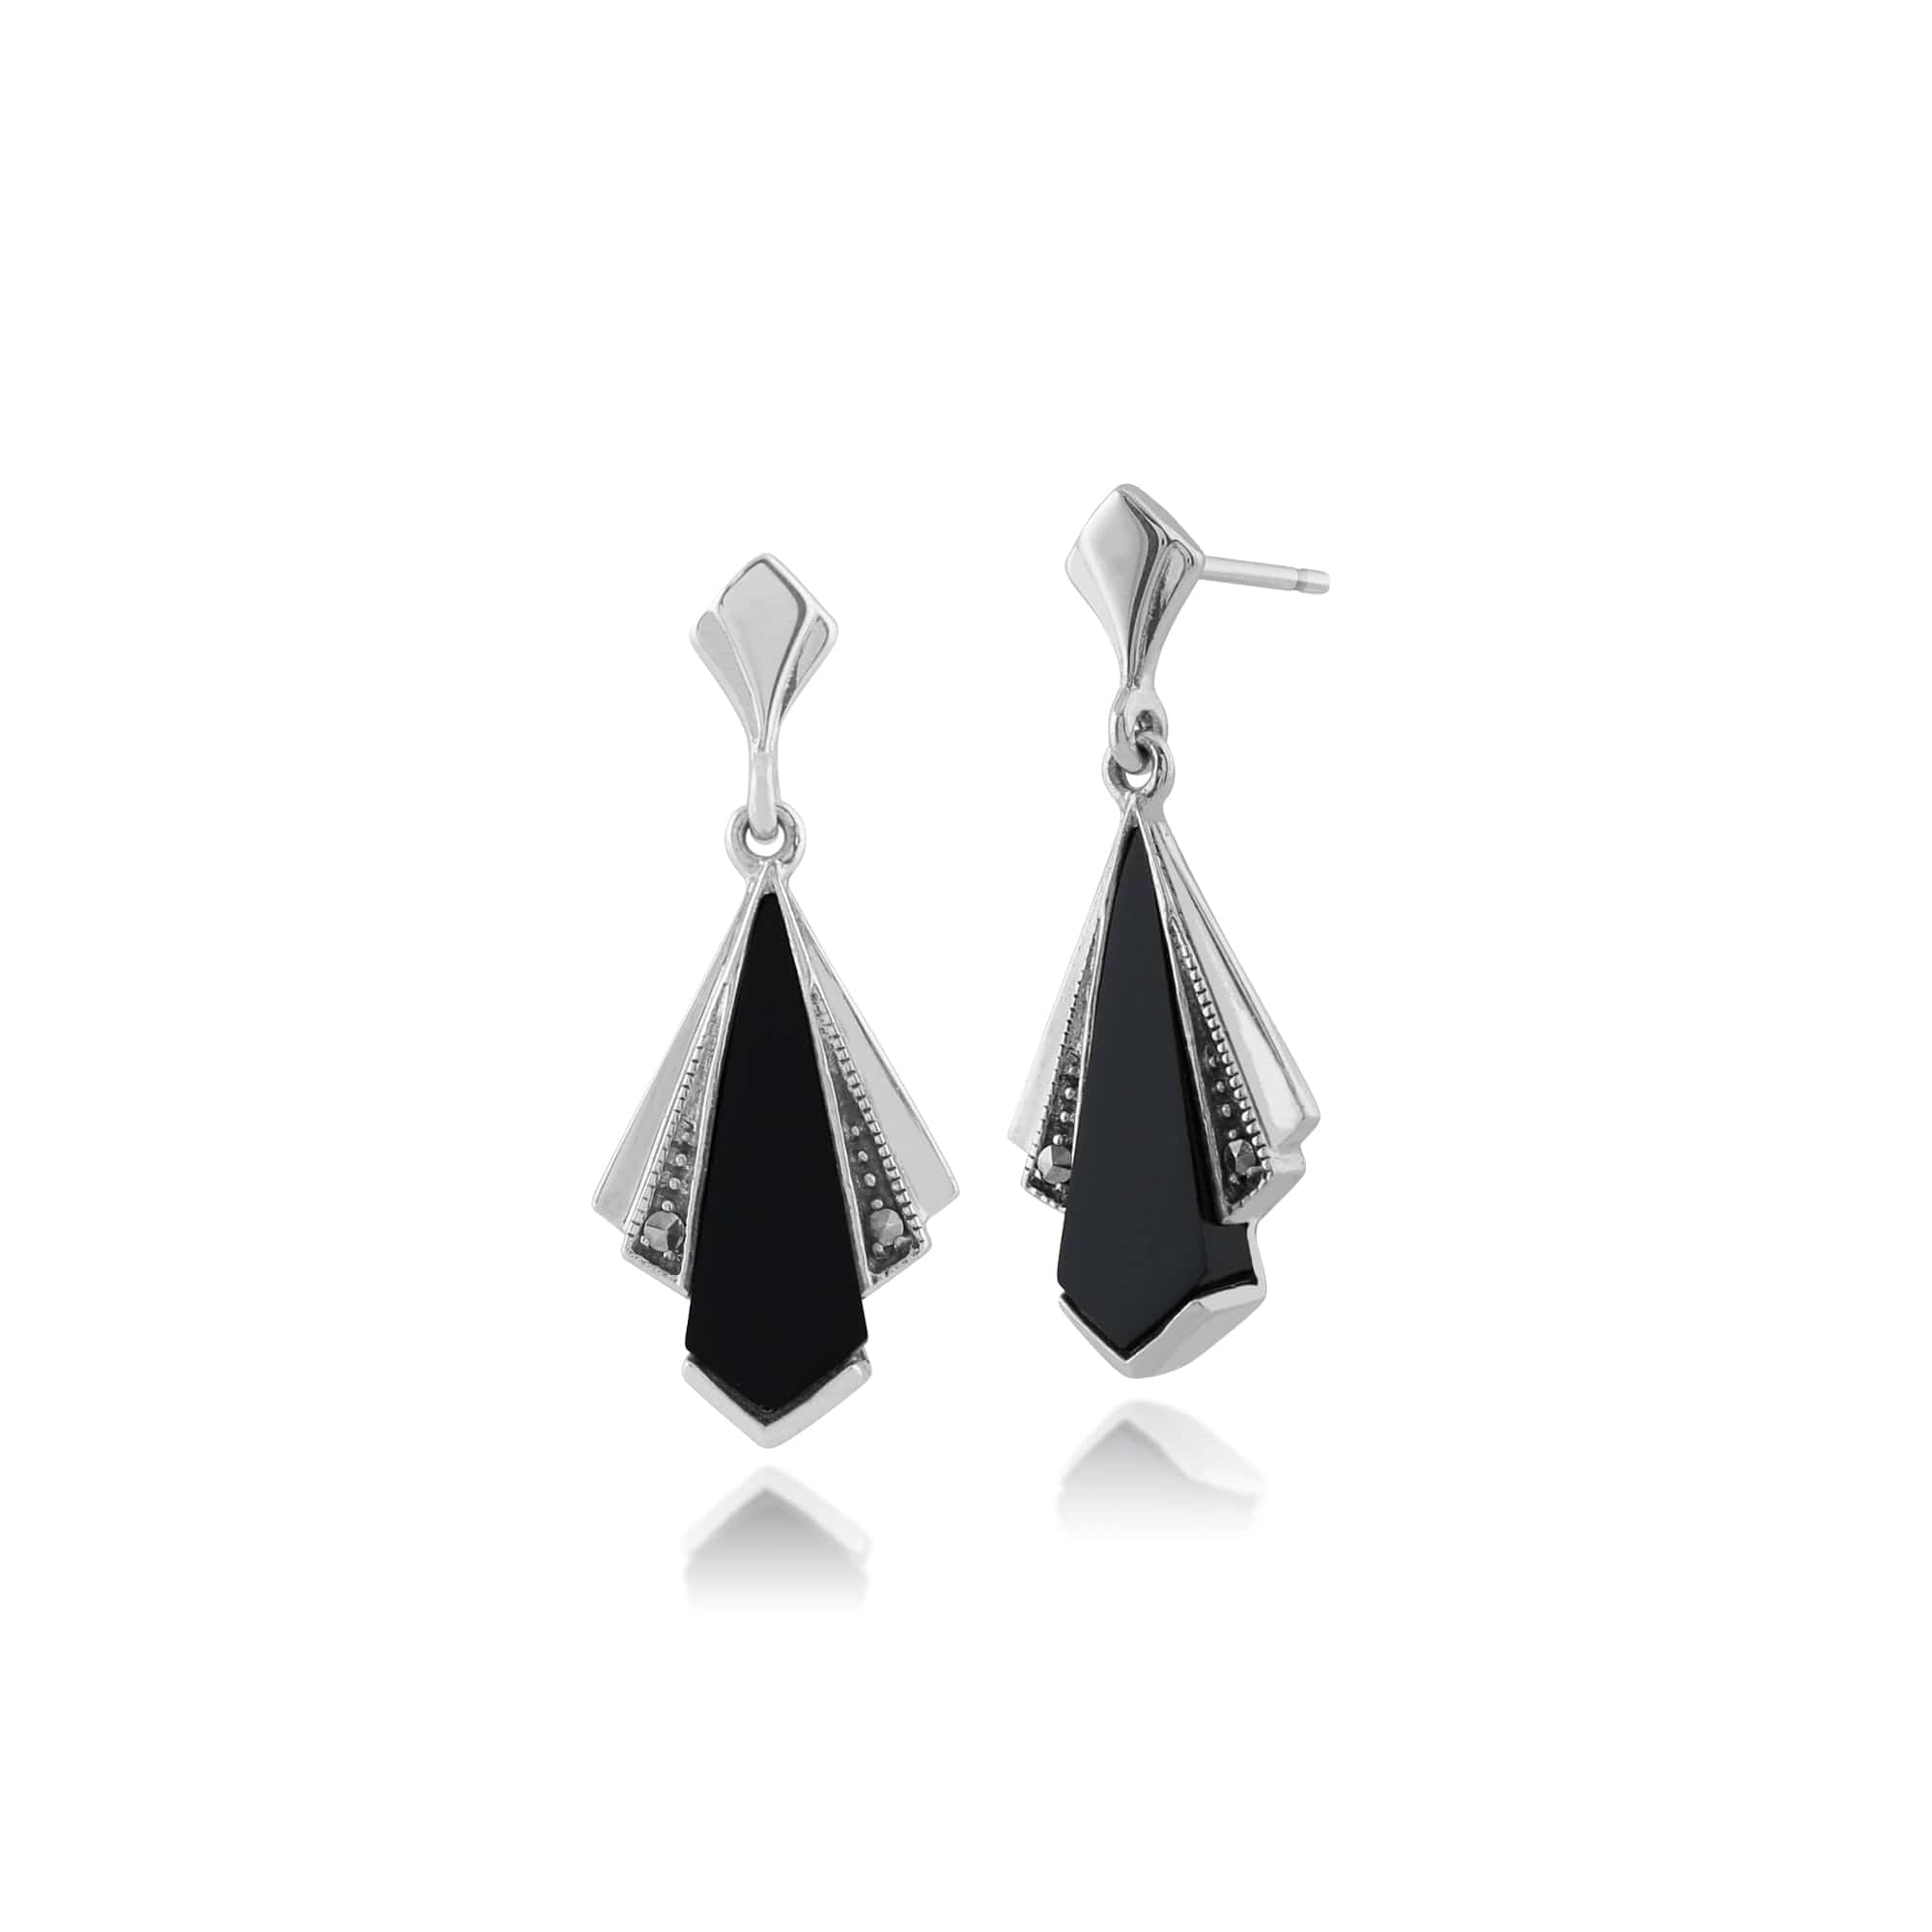 Art Deco Style Black Onyx & Marcasite Fan Drop Earrings in 925 Sterling Silver - Gemondo